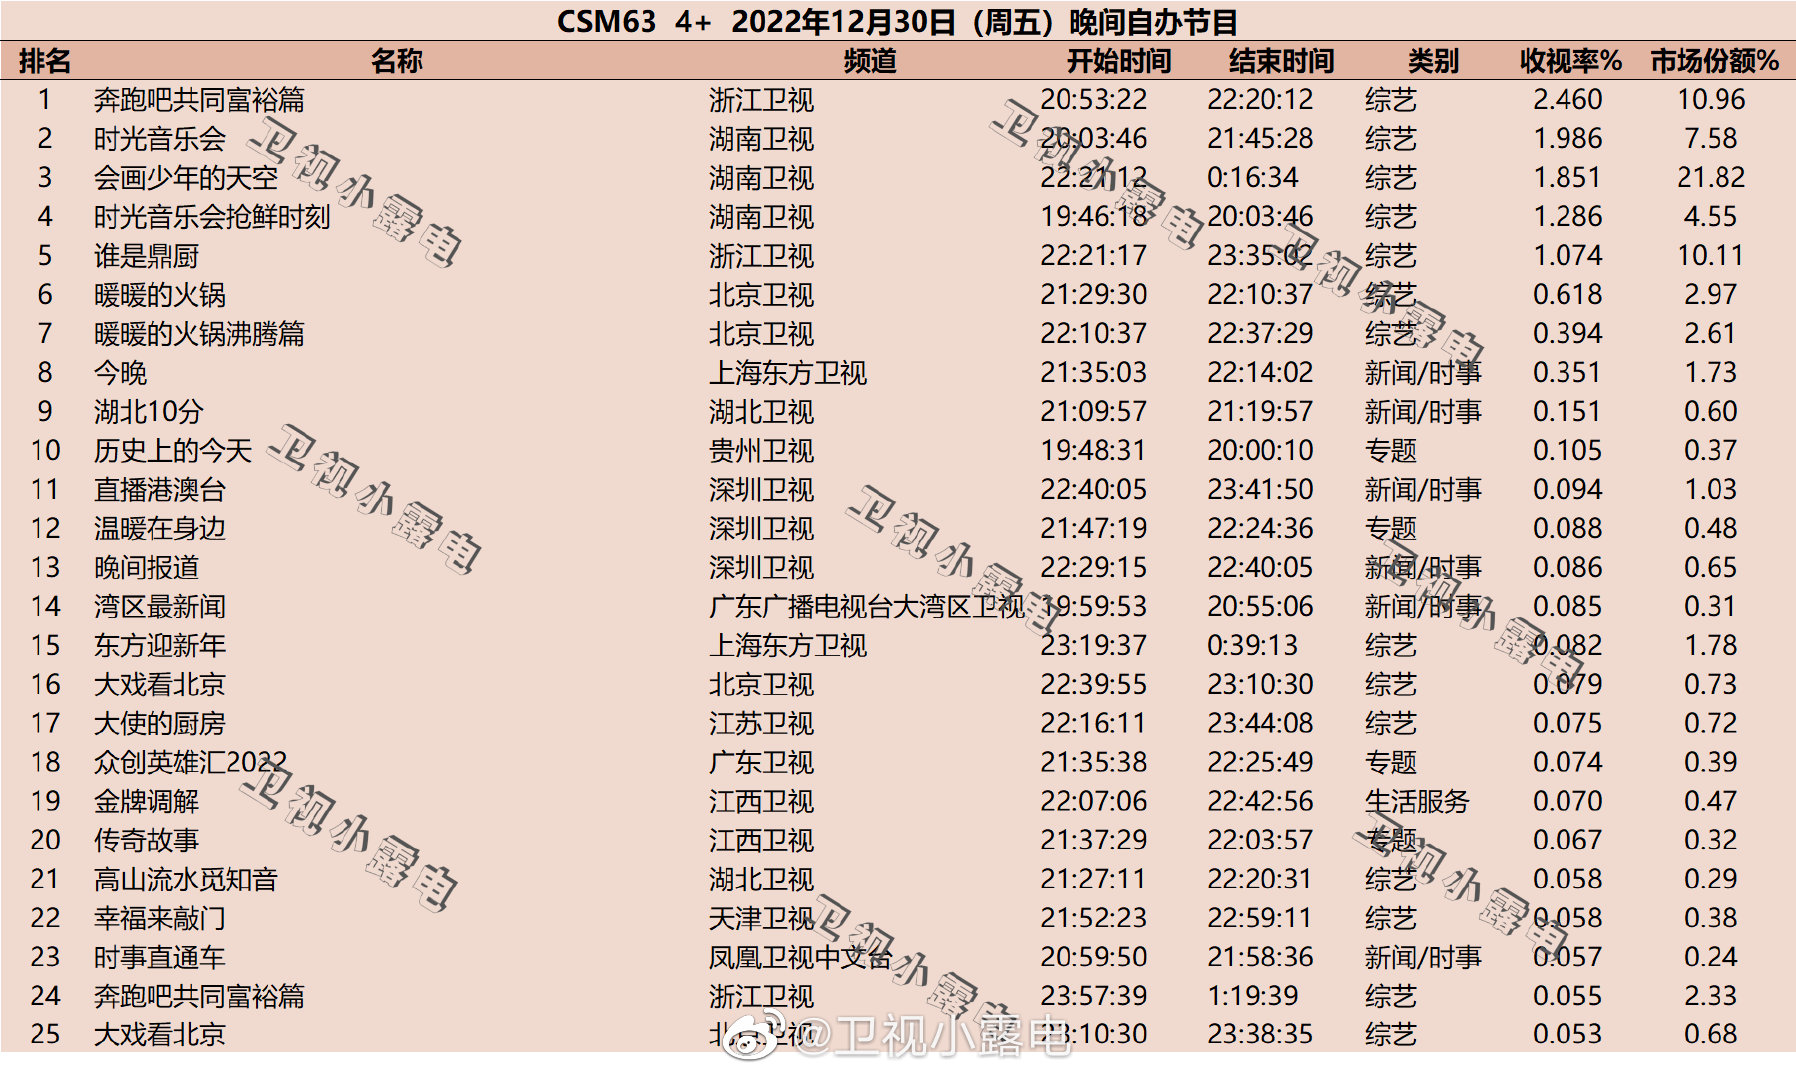 2022年12月30日综艺节目收视率排行榜（奔跑吧共同富裕篇、时光音乐会、会画少年的天空）